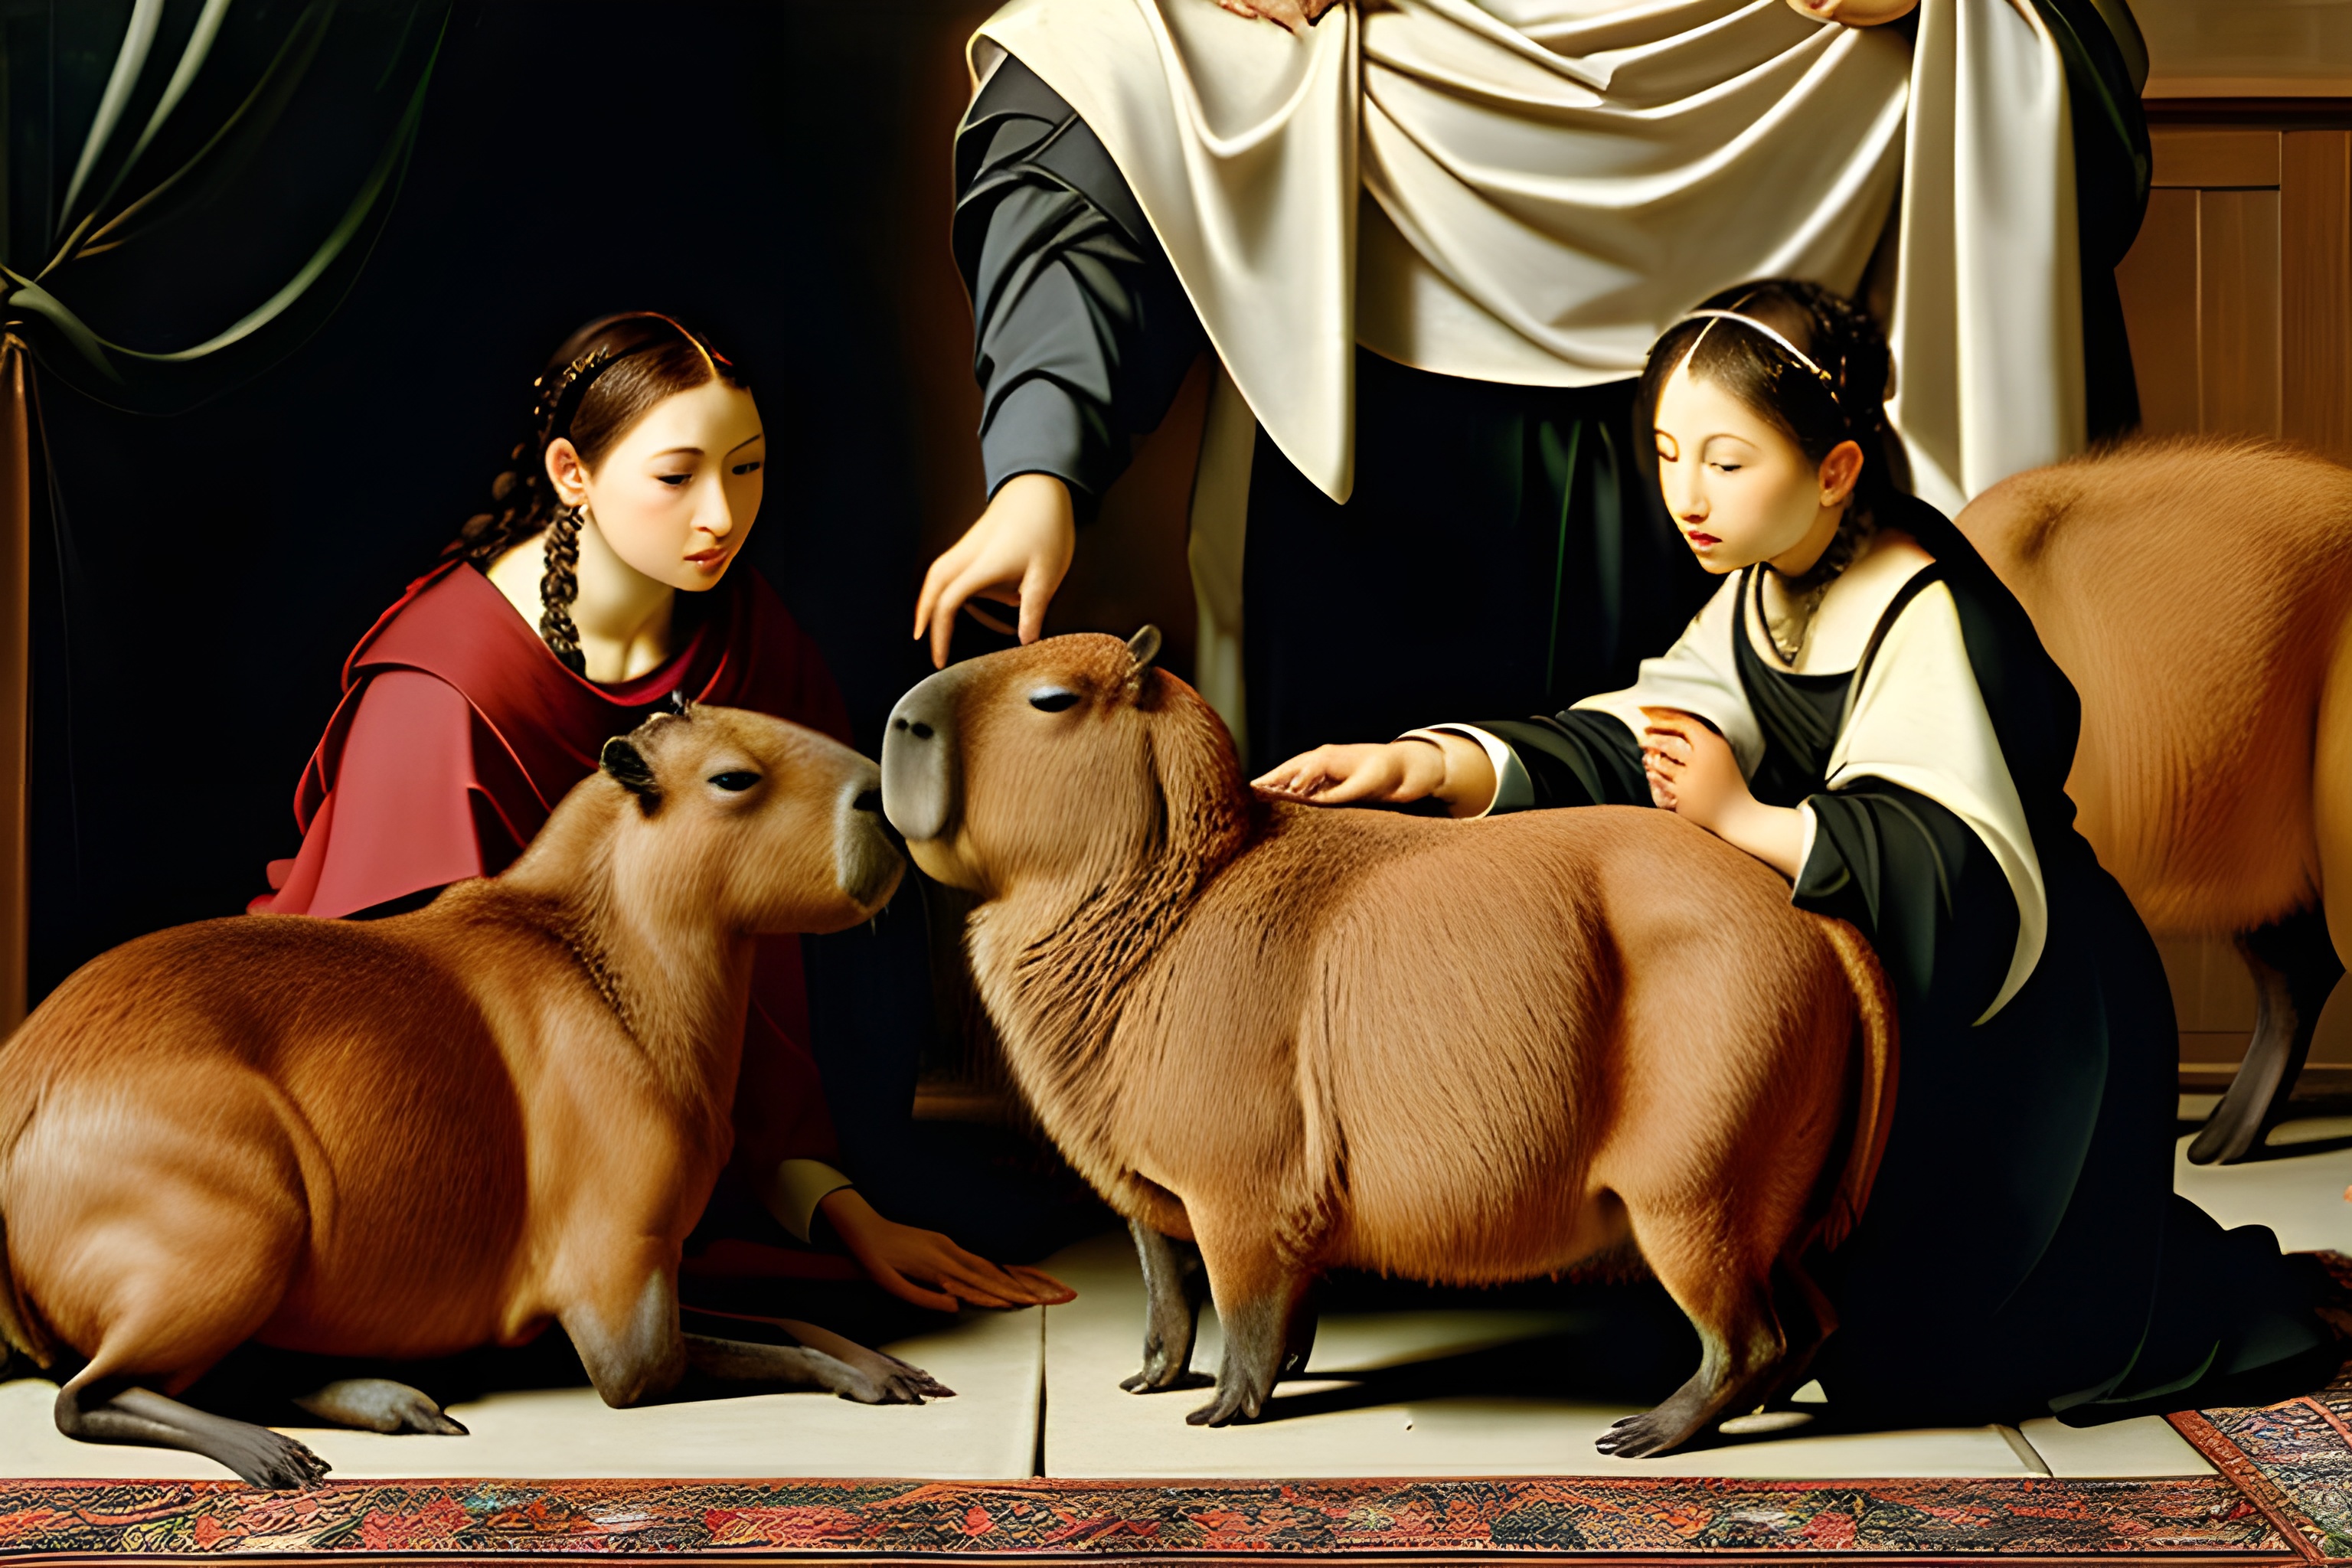 Capybara image by Doktor_Weasel